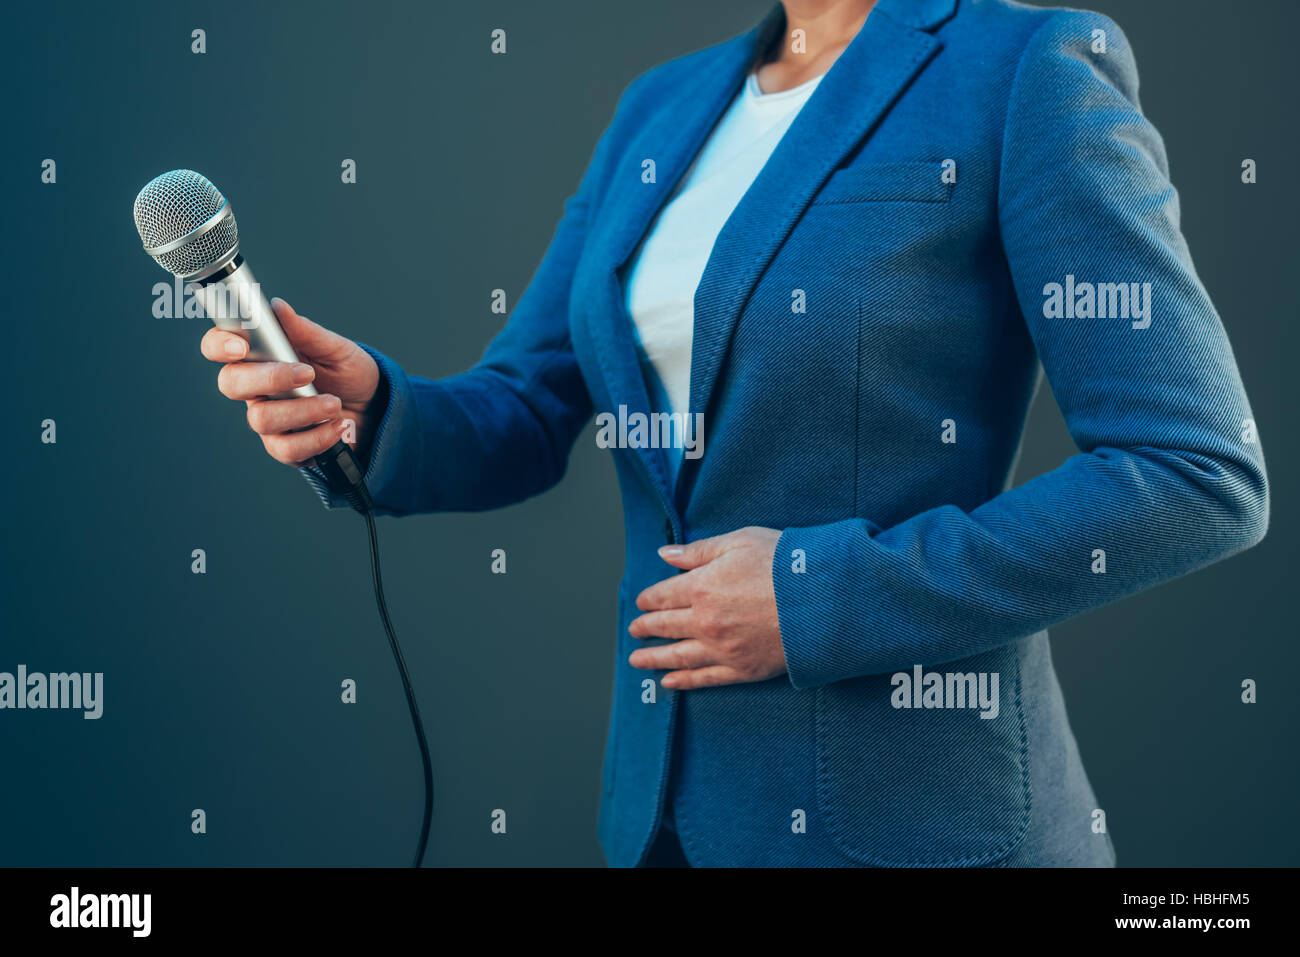 Elegante Journalistin Durchführung von Business-Interview oder Pressekonferenz, mit Mikrofon hand Stockfoto